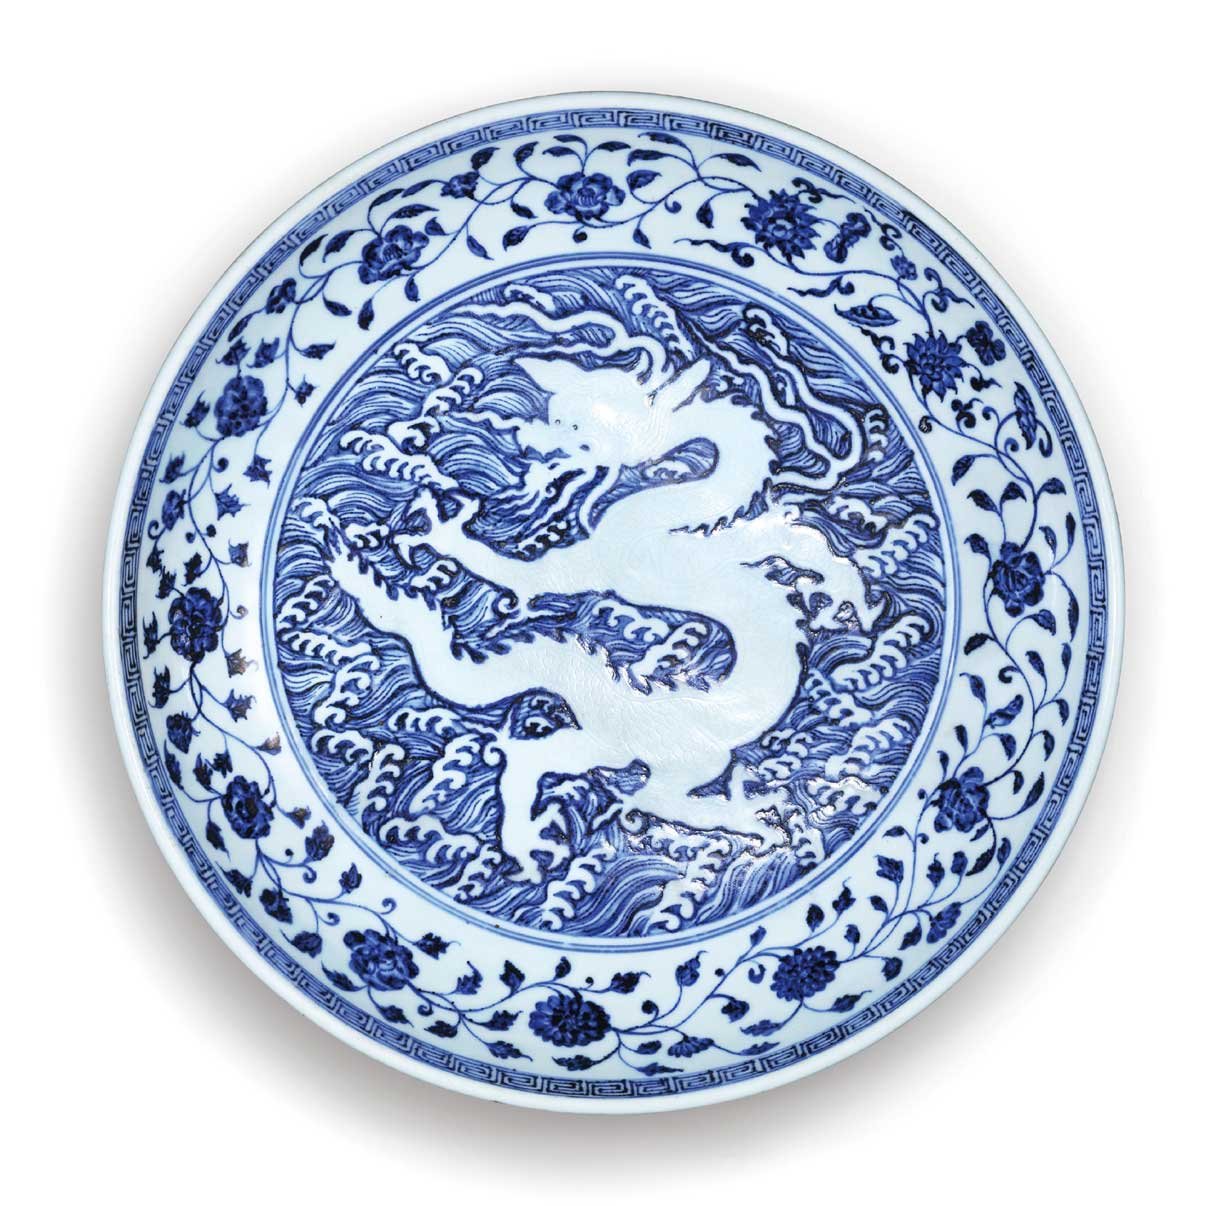 北京保利拍賣延續青花的故事再現中國陶瓷史的輝煌篇章%CANS藝術新聞